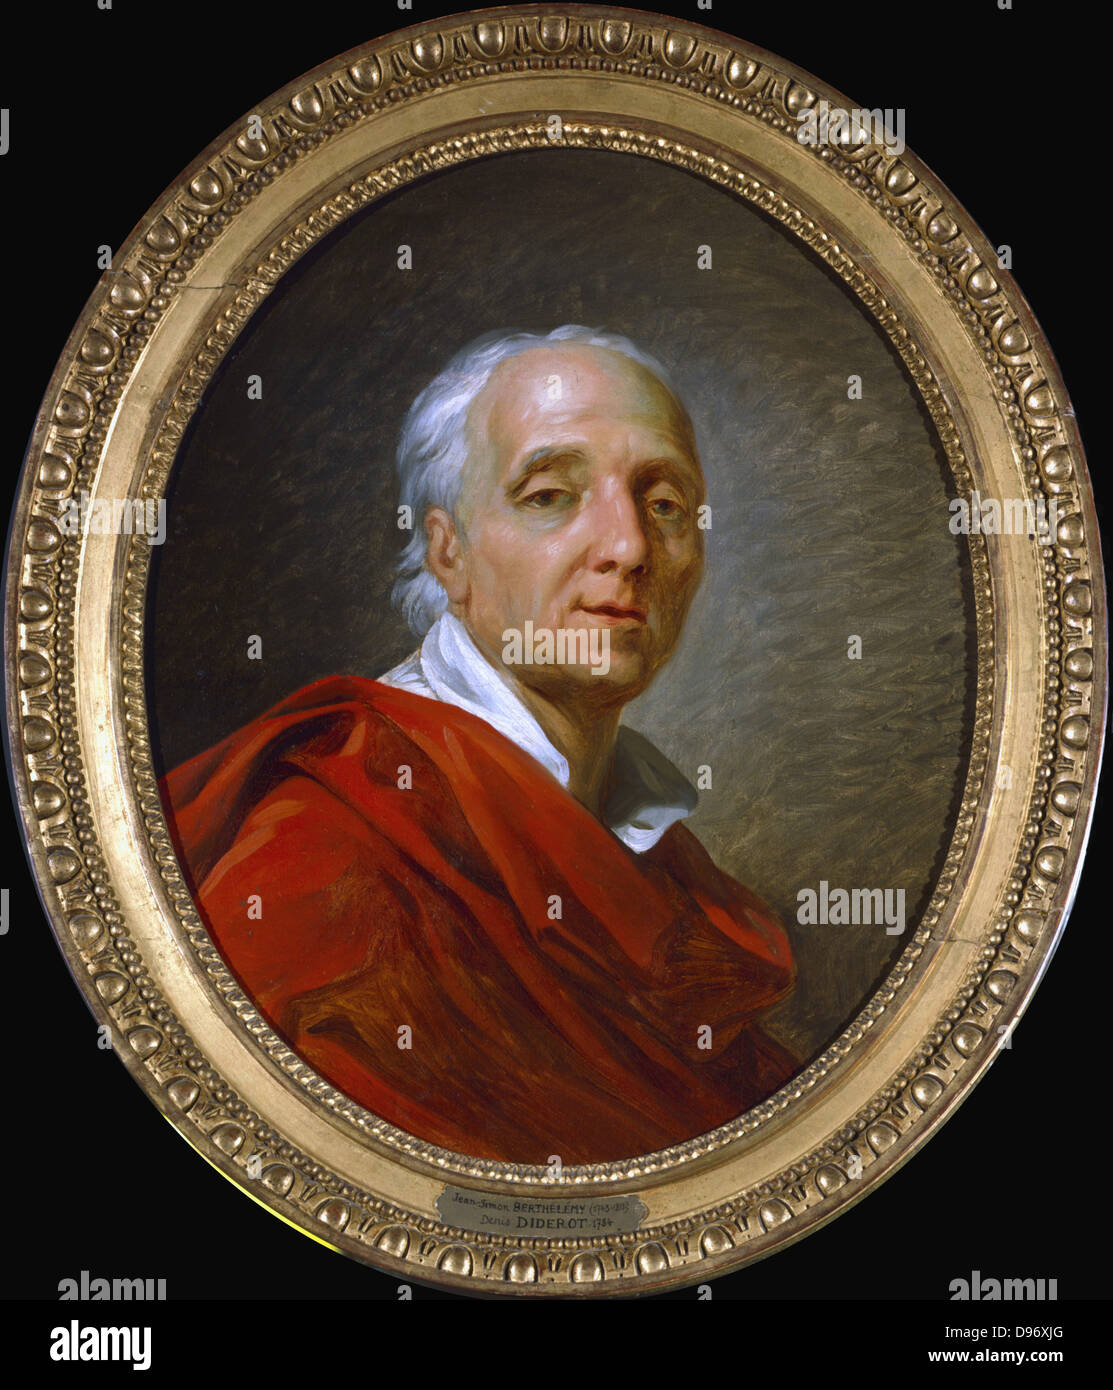 Denis Diderot (1713-1784) französischer Mann von Briefen und Enzyklopädist. Porträt von Antoine Barthelemy oder Berthelmy. Öl auf Leinwand. Stockfoto